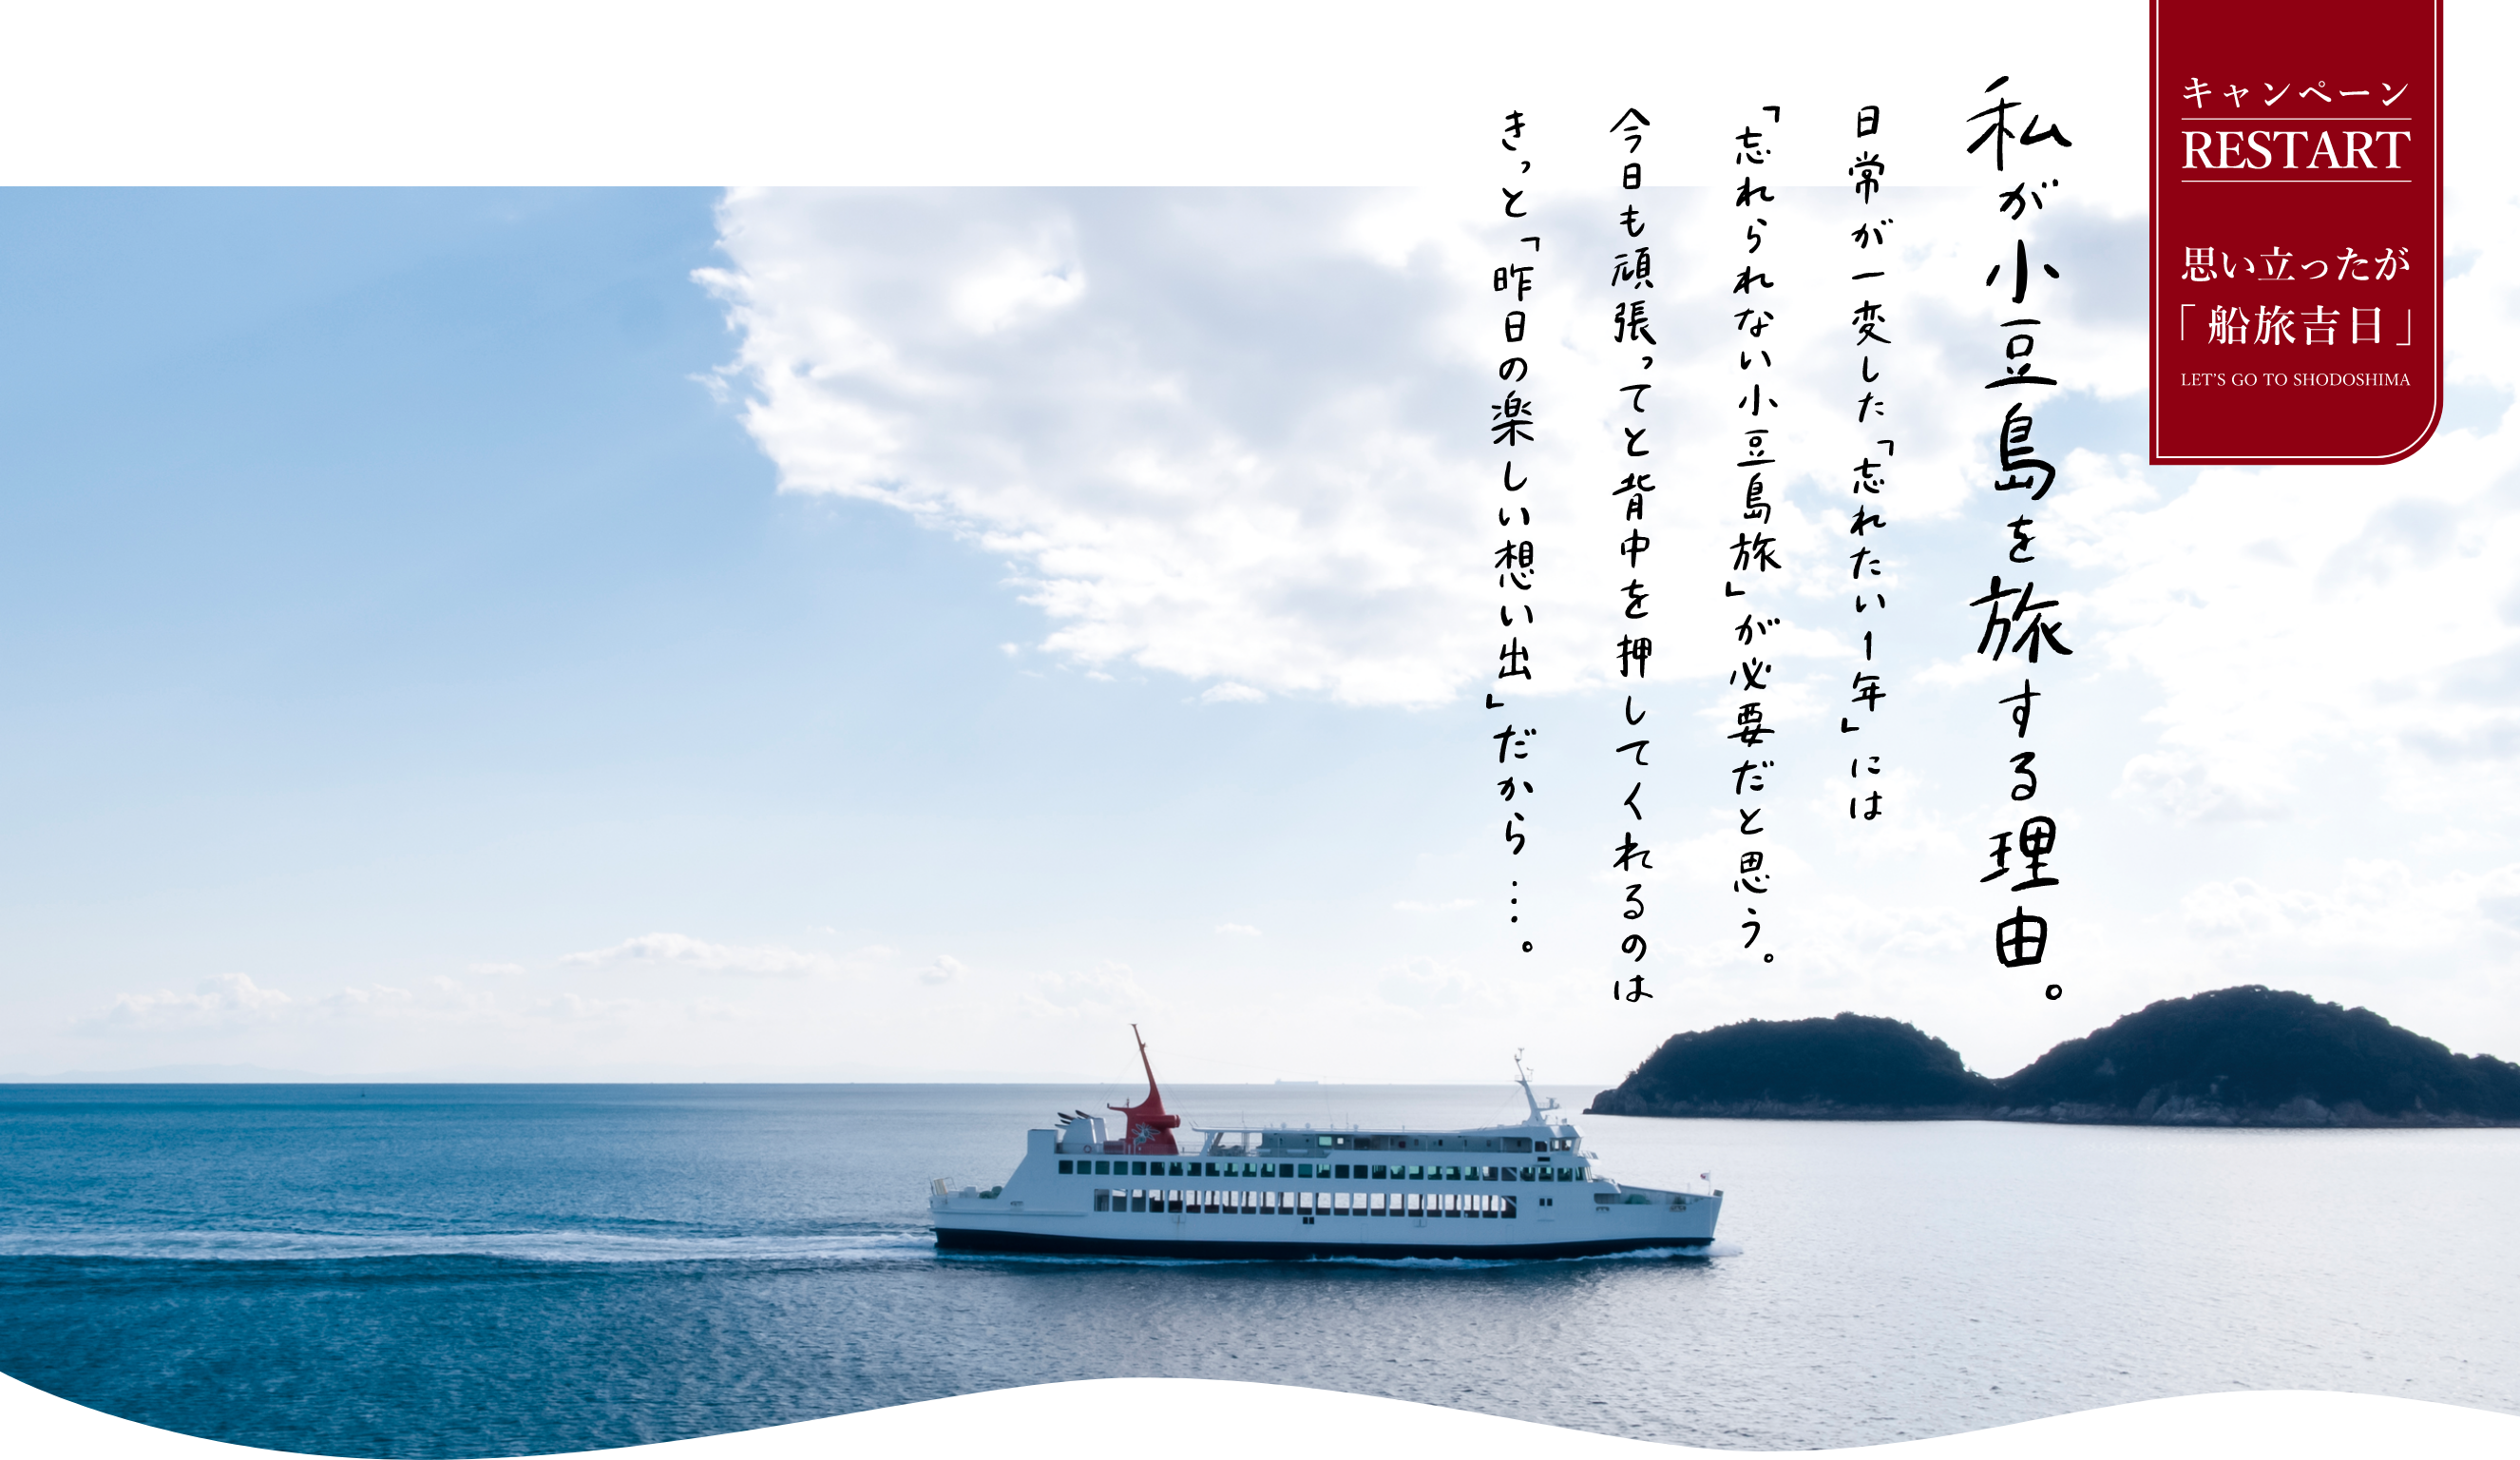 私が小豆島を旅する理由。お待たせしました 10月15日宿泊分より日本全国の方が対象となります